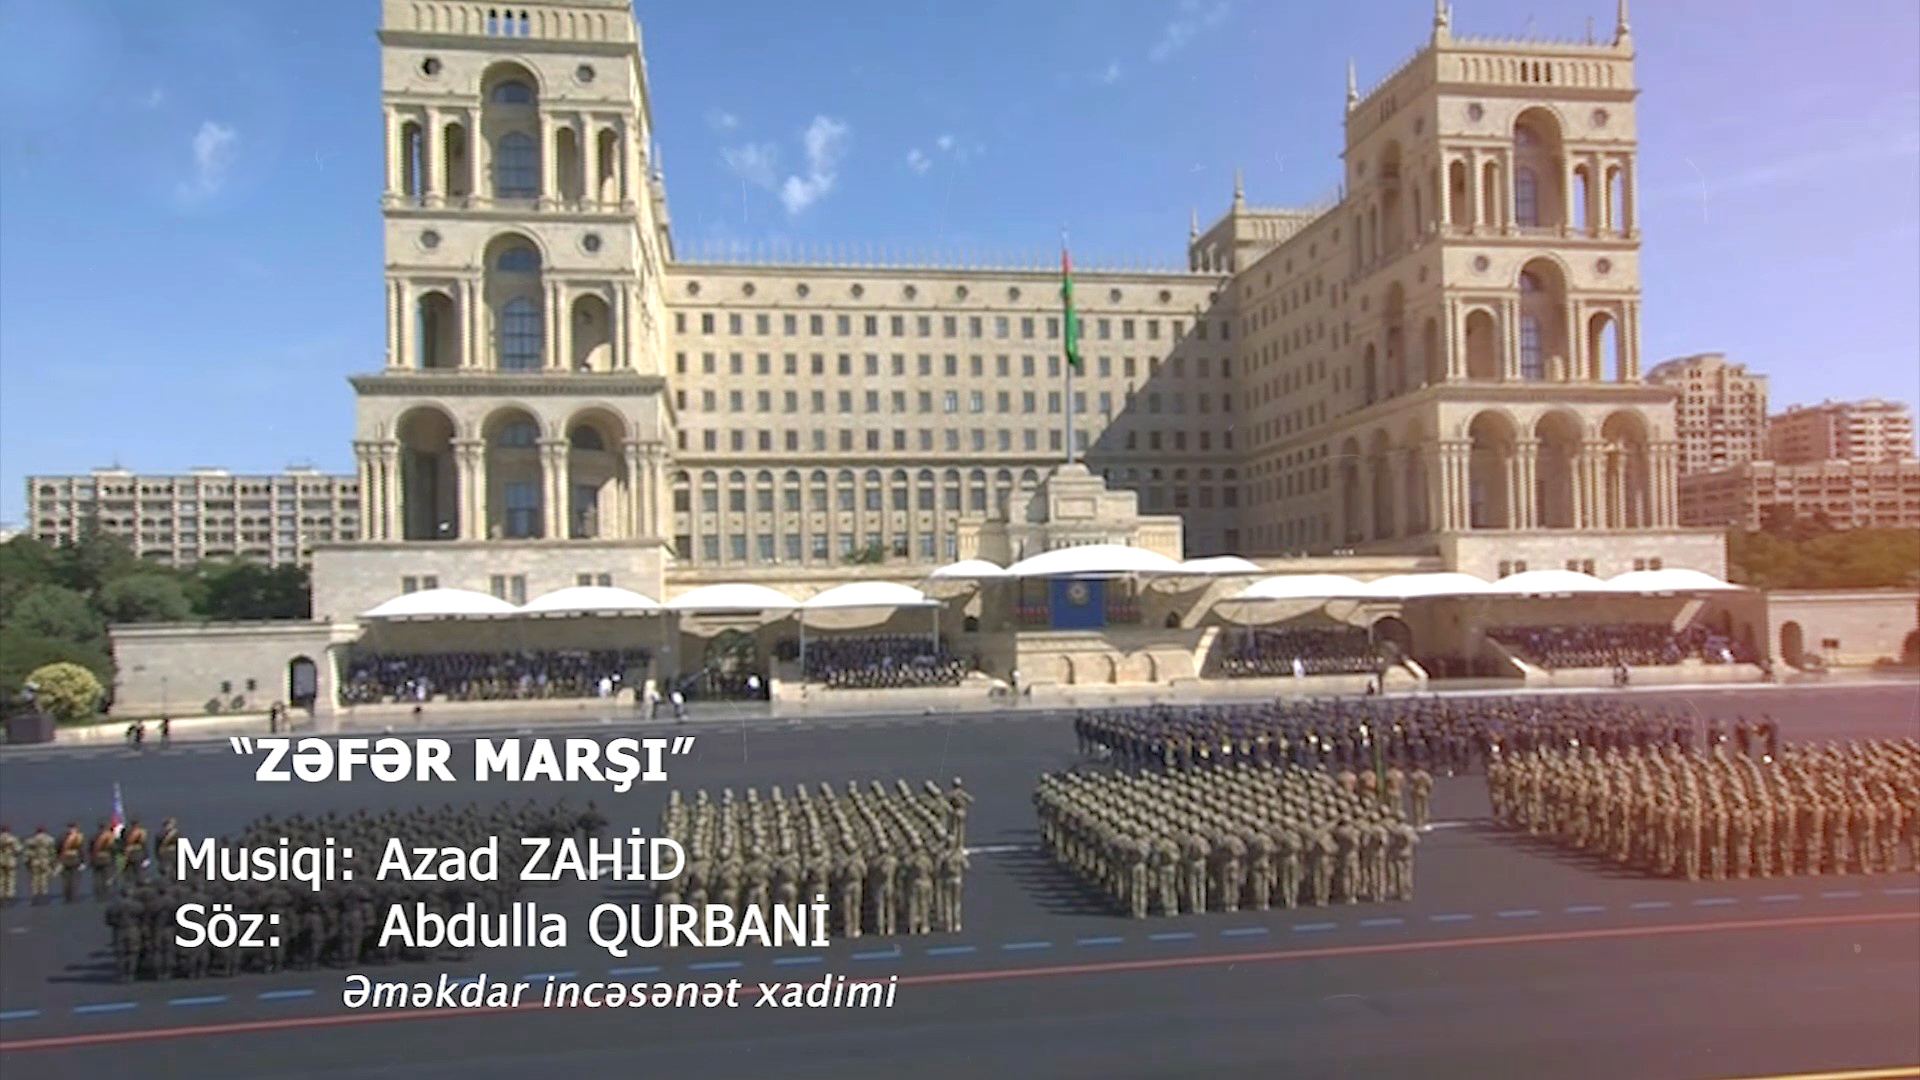 Müdafiə Nazirliyi “Zəfər marşı” adlı yeni videoçarx hazırlayıb